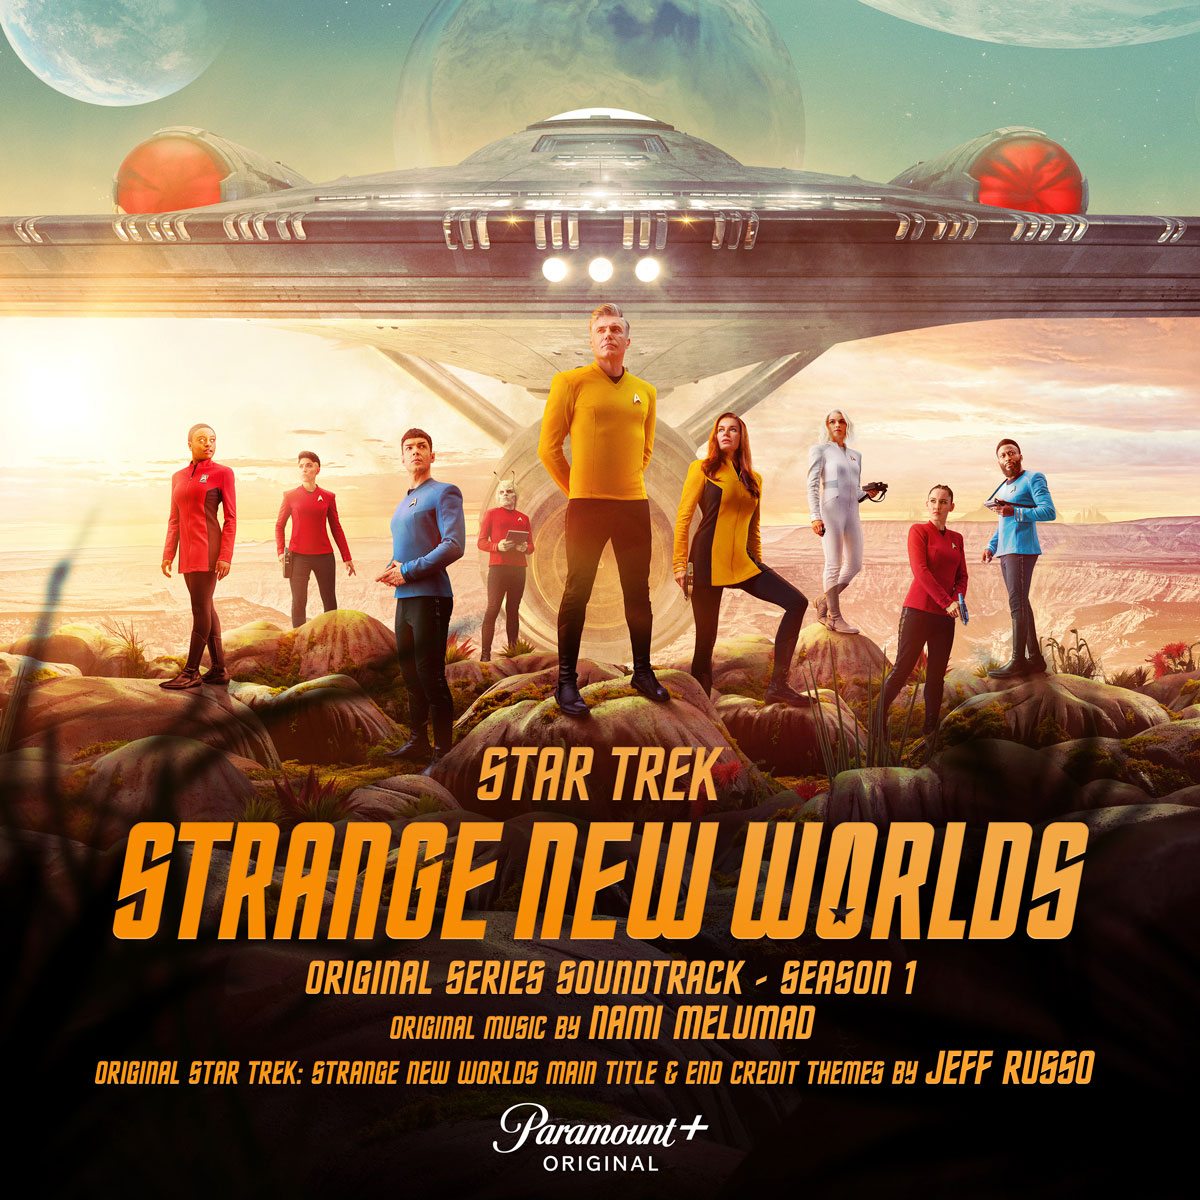 star trek strange new worlds music episode 5